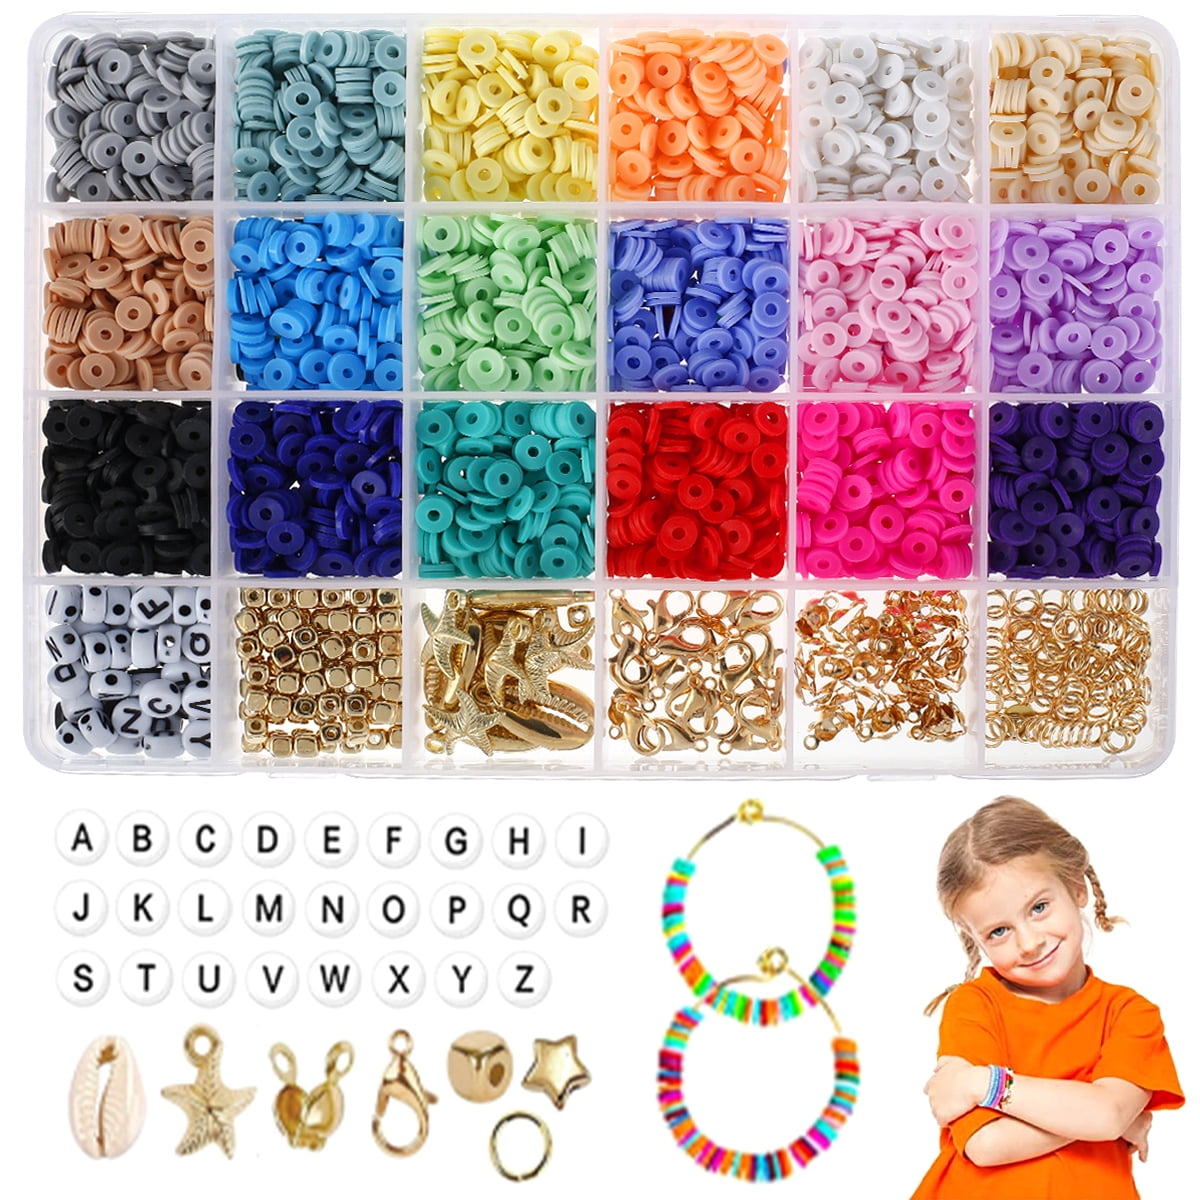 Bulk Order for 25 Beaded Word Bracelets, Words of Affirmation Bracelets,  Name Bracelets, Personalized Bracelets